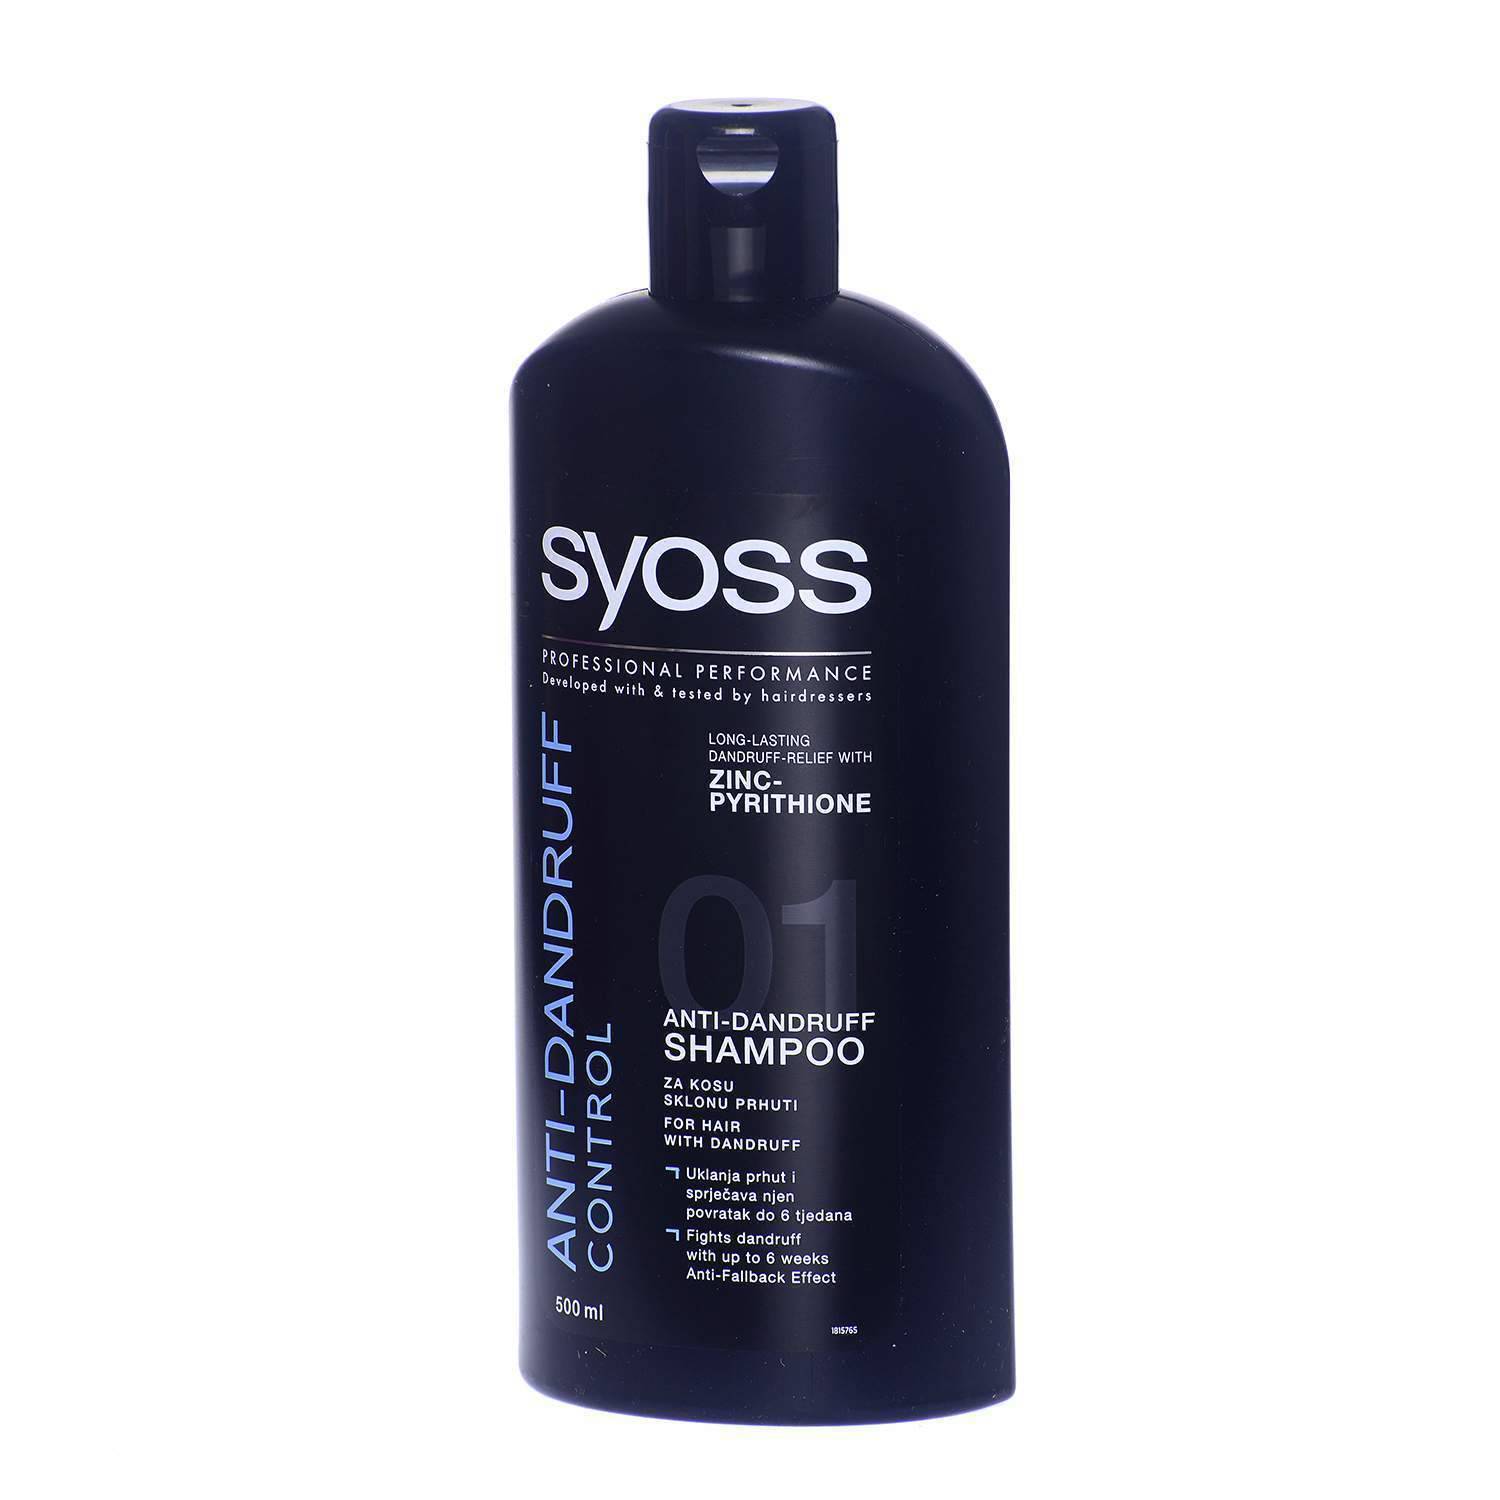 Kako odabrati dobar šampon? Pjena smanjuje trenje i kosa će se manje zapetljati u pranju